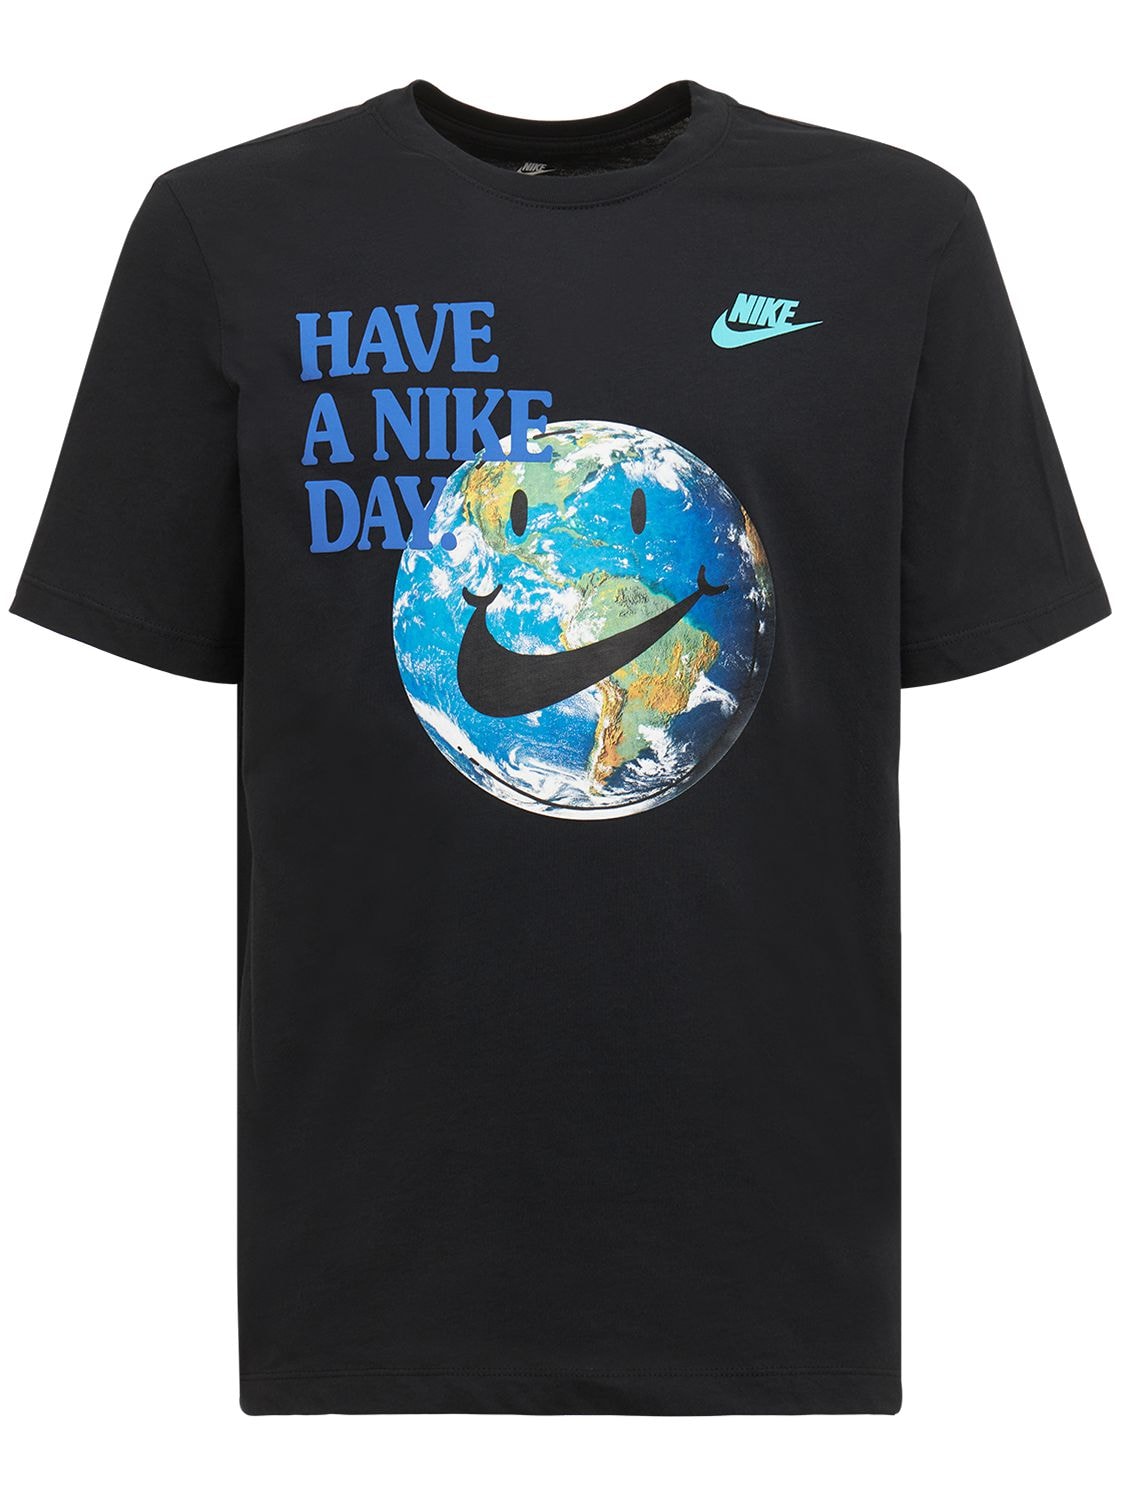 Nike - Have a nice day t-shirt - Black | Luisaviaroma